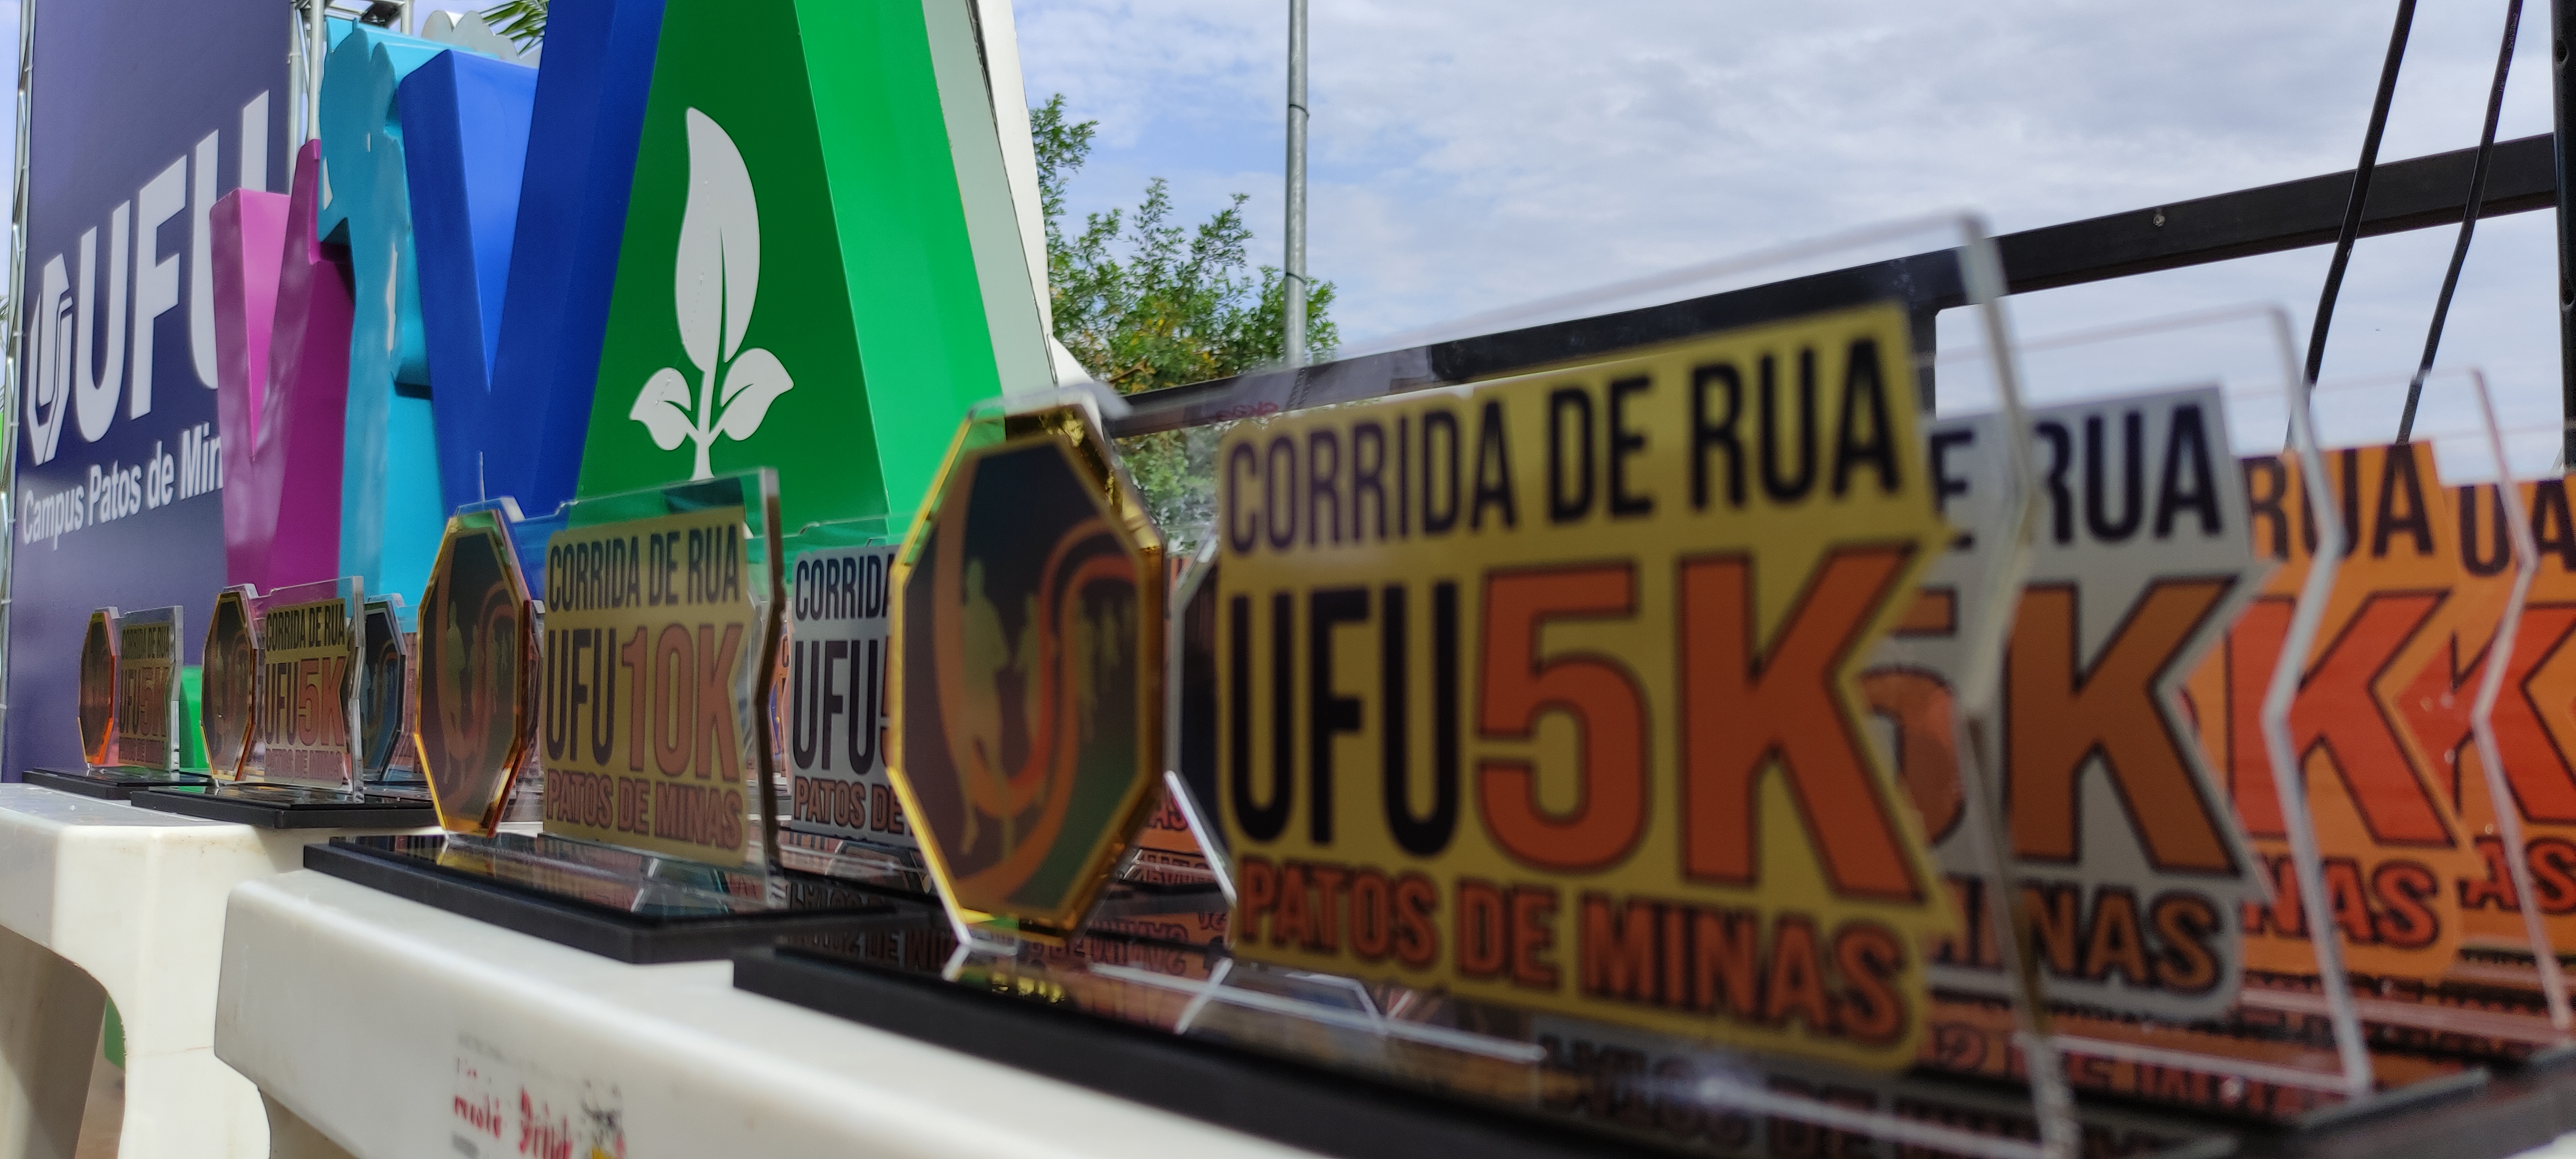 Troféus da Corrida UFU 5k e 10k em Patos de Minas. (Foto: Hermom Dourado)